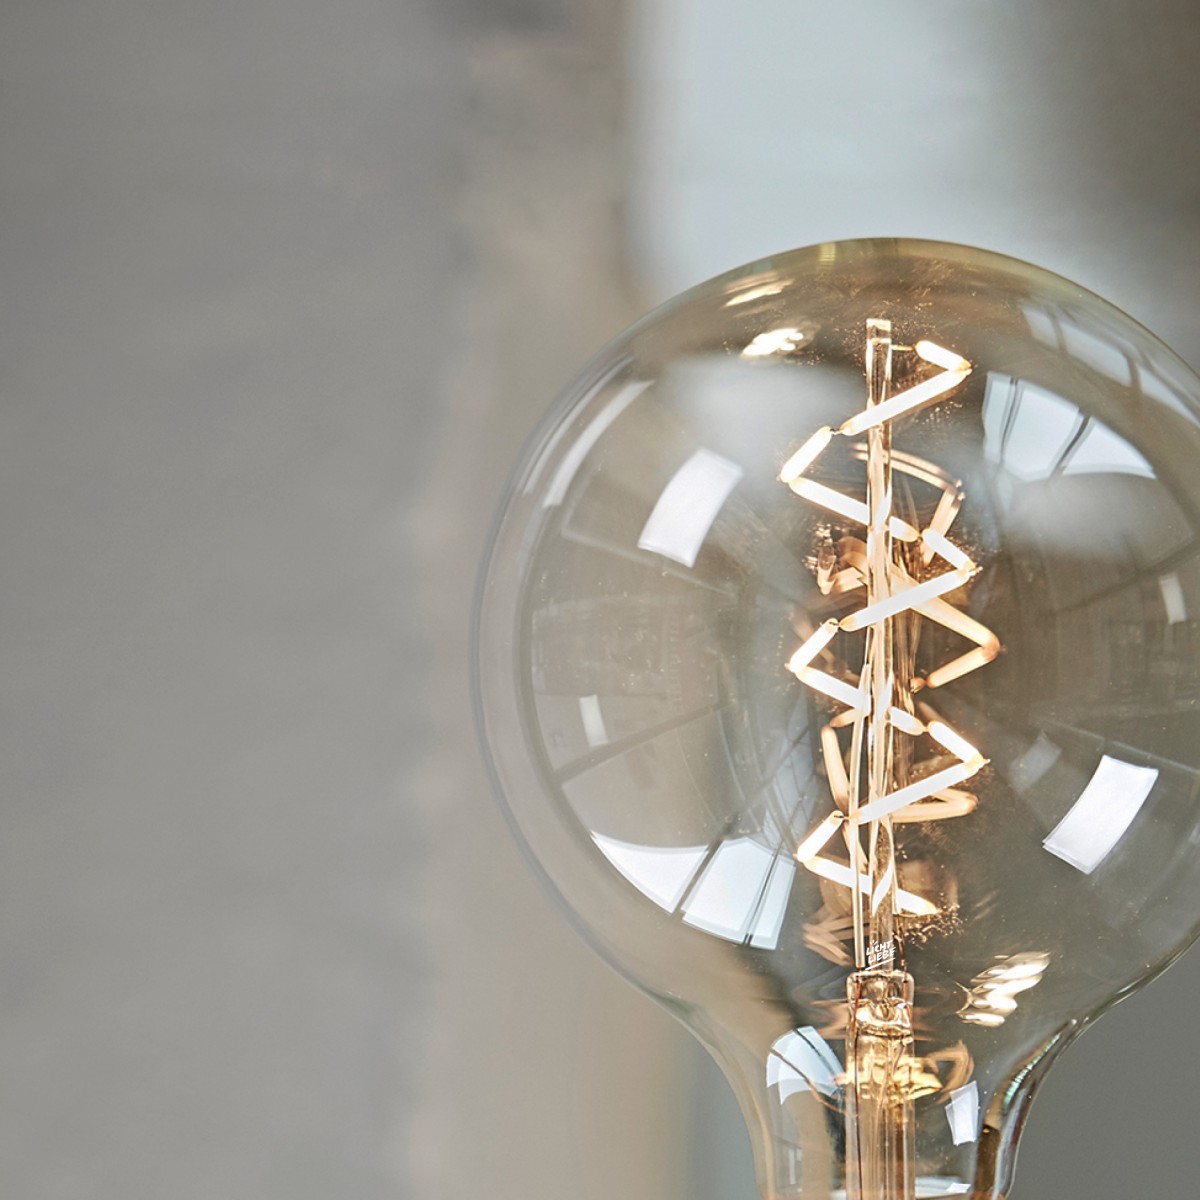 Lichtliebe Edison Spiral LED-Leuchtmittel im Retro Design mit nur 1,8 Watt E27 Fassung